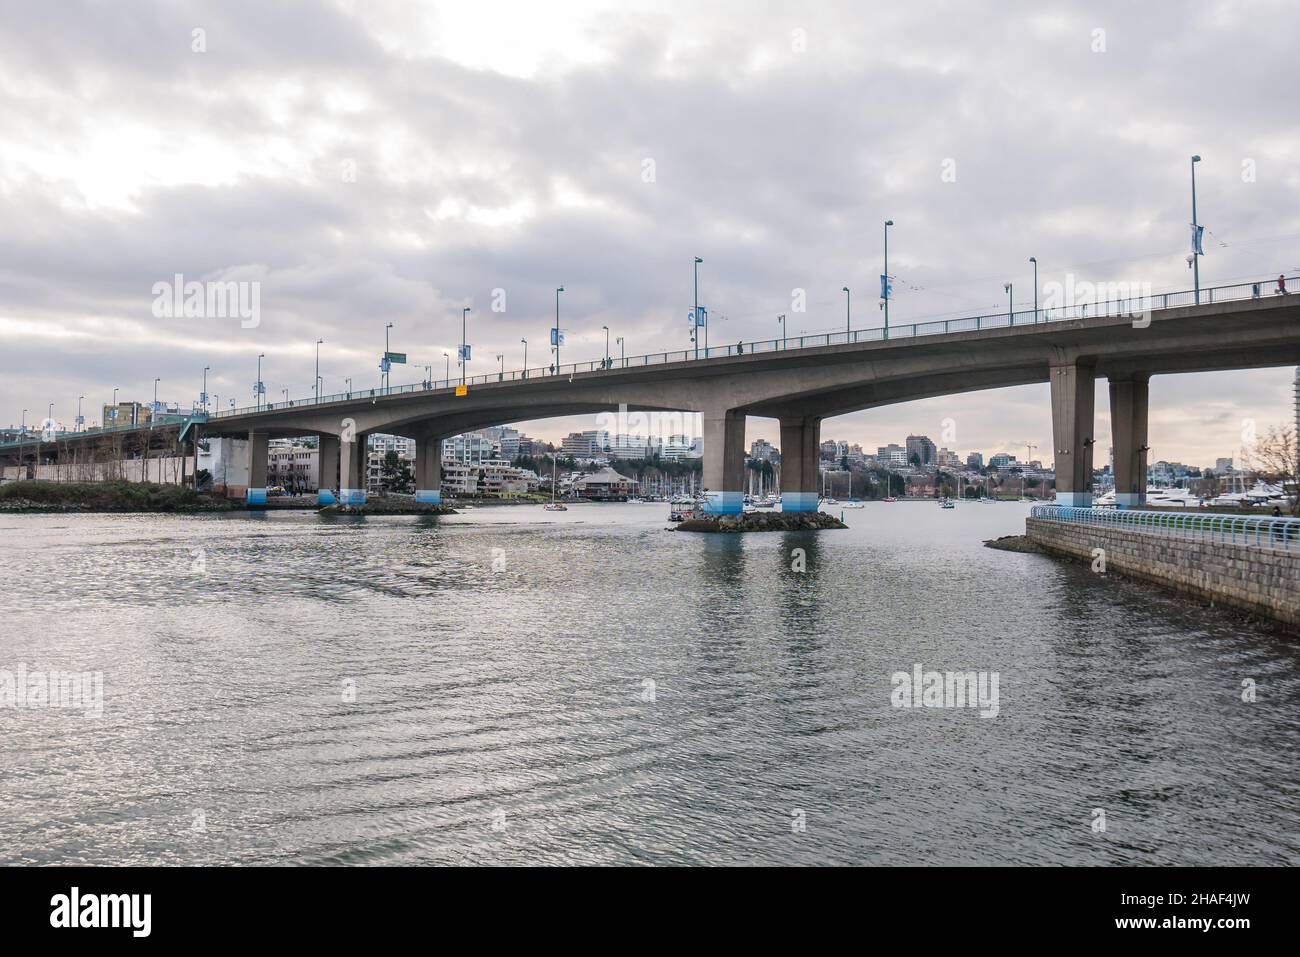 Die Cambie Bridge ist eine symmetrische, aus vorgefertigter Stahlkonstruktion gefertigte, sechsspurige Trägerbrücke mit variierender Tiefe, die False Creek in Vancouver, British Columbia, überspannt. Stockfoto